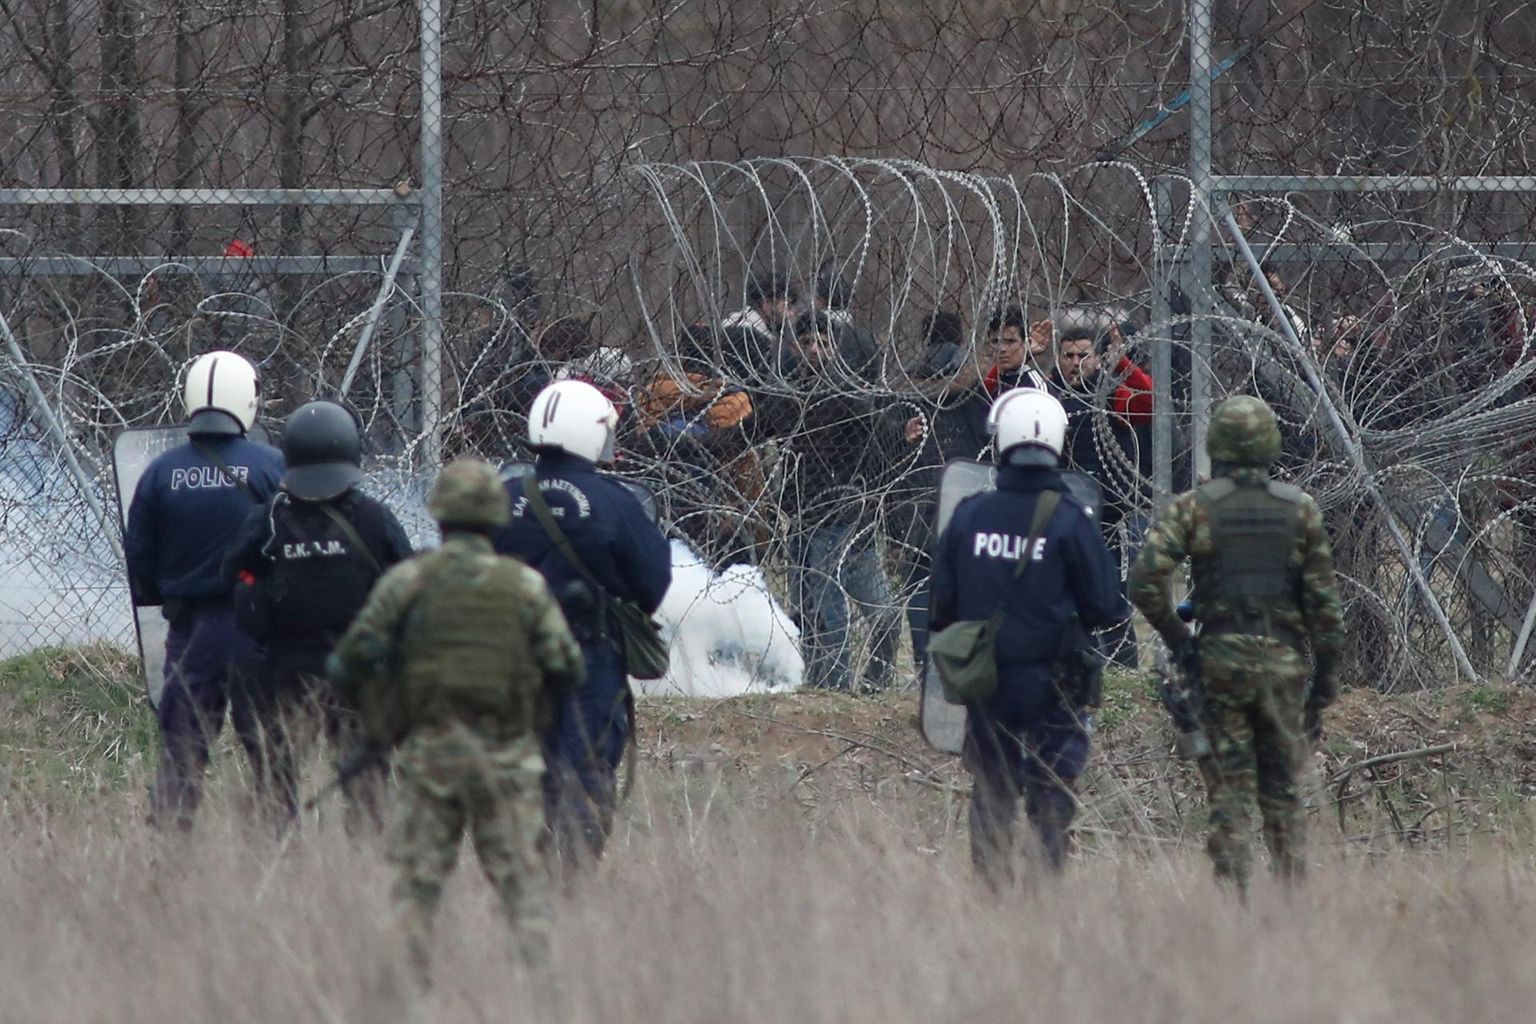 Pagulased üritavad Kreeka politseinike ja kaitseväelaste pilgu all Kreeka-Türgi piiril Kastaniési lähedal traattõkkest läbi tungida.